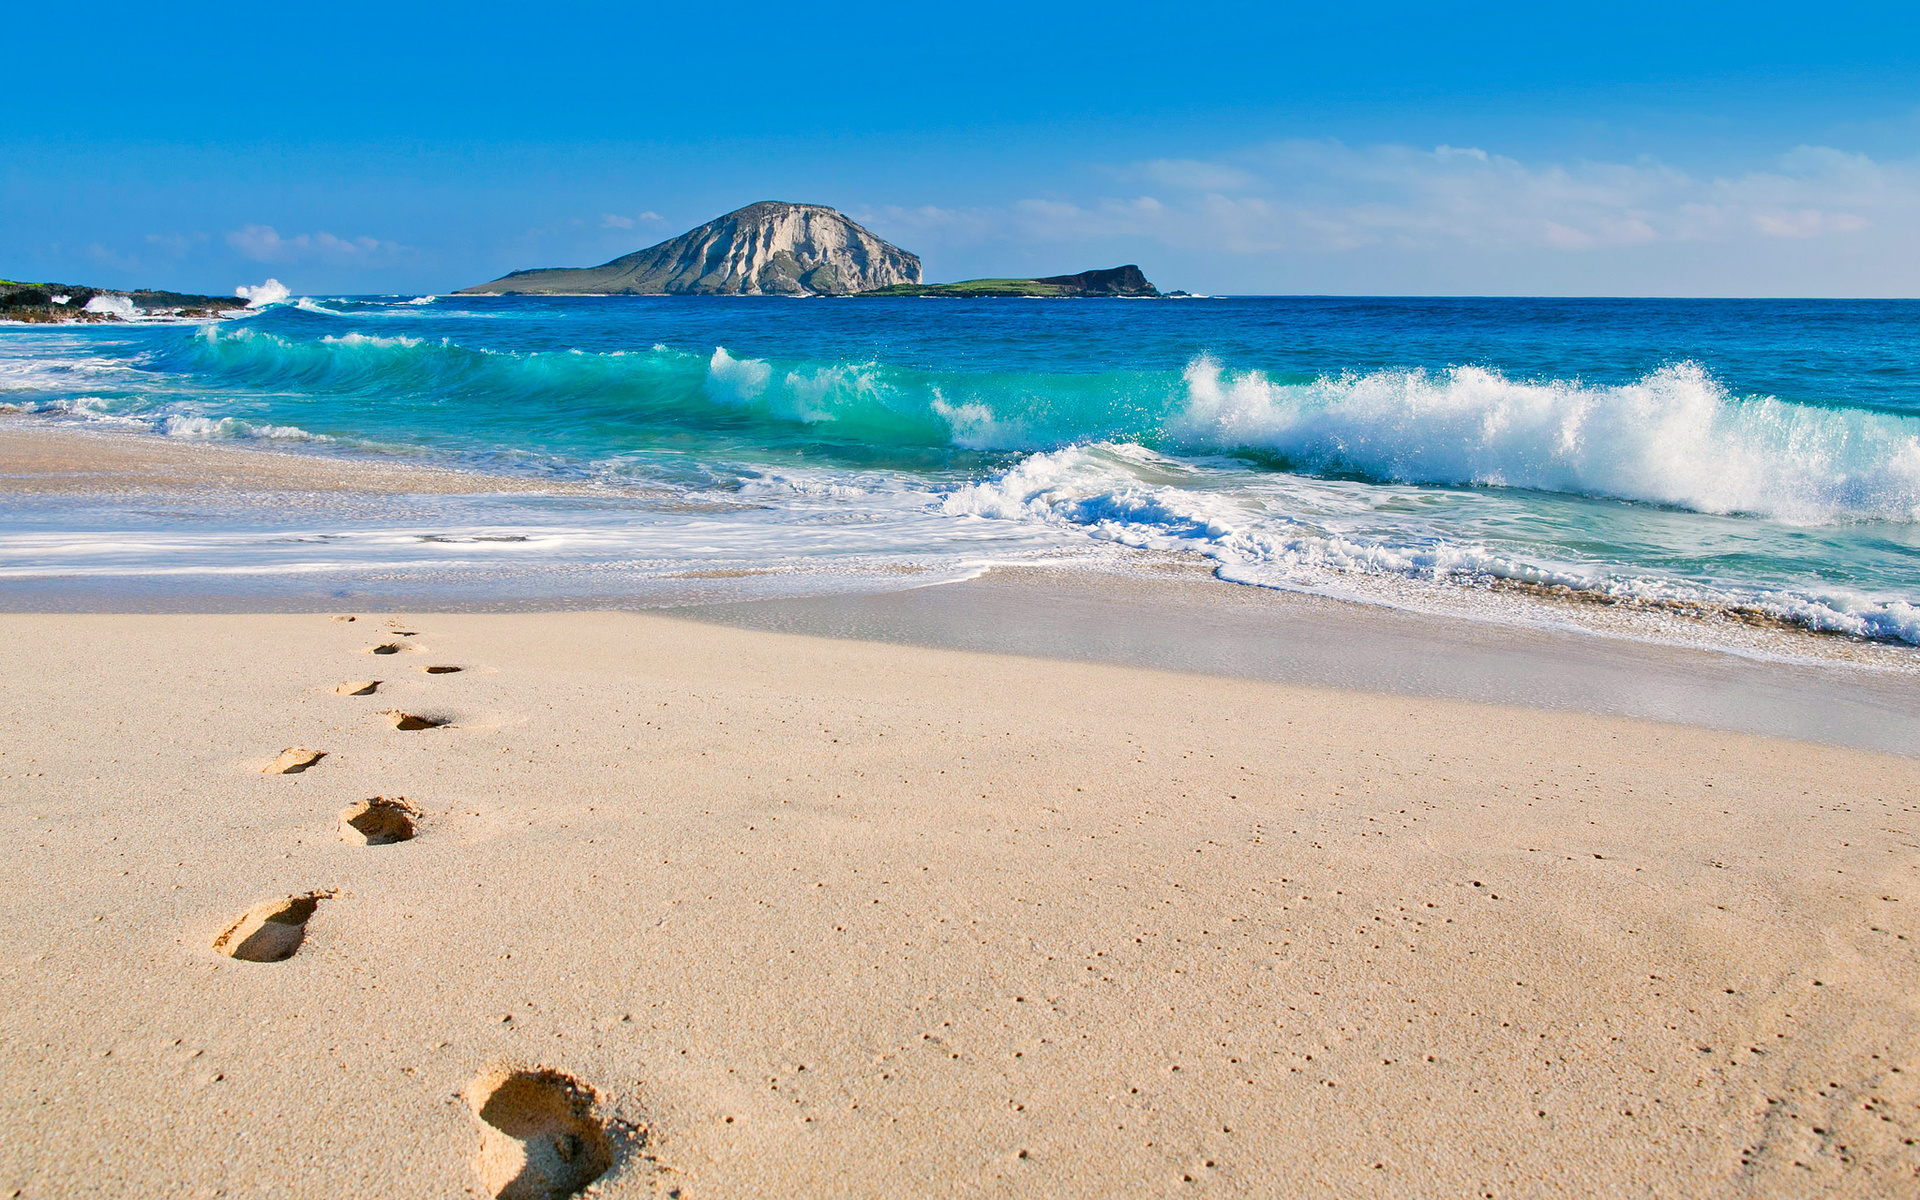 Hình nền bãi biển mùa hè sẽ cho bạn trải nghiệm cảm giác sảng khoái khi tự do đắm mình giữa những bãi biển cát trắng và nước trong xanh. Tận hưởng những phút giây thư giãn cùng những bức ảnh đầy màu sắc và sống động trên màn hình desktop của bạn.